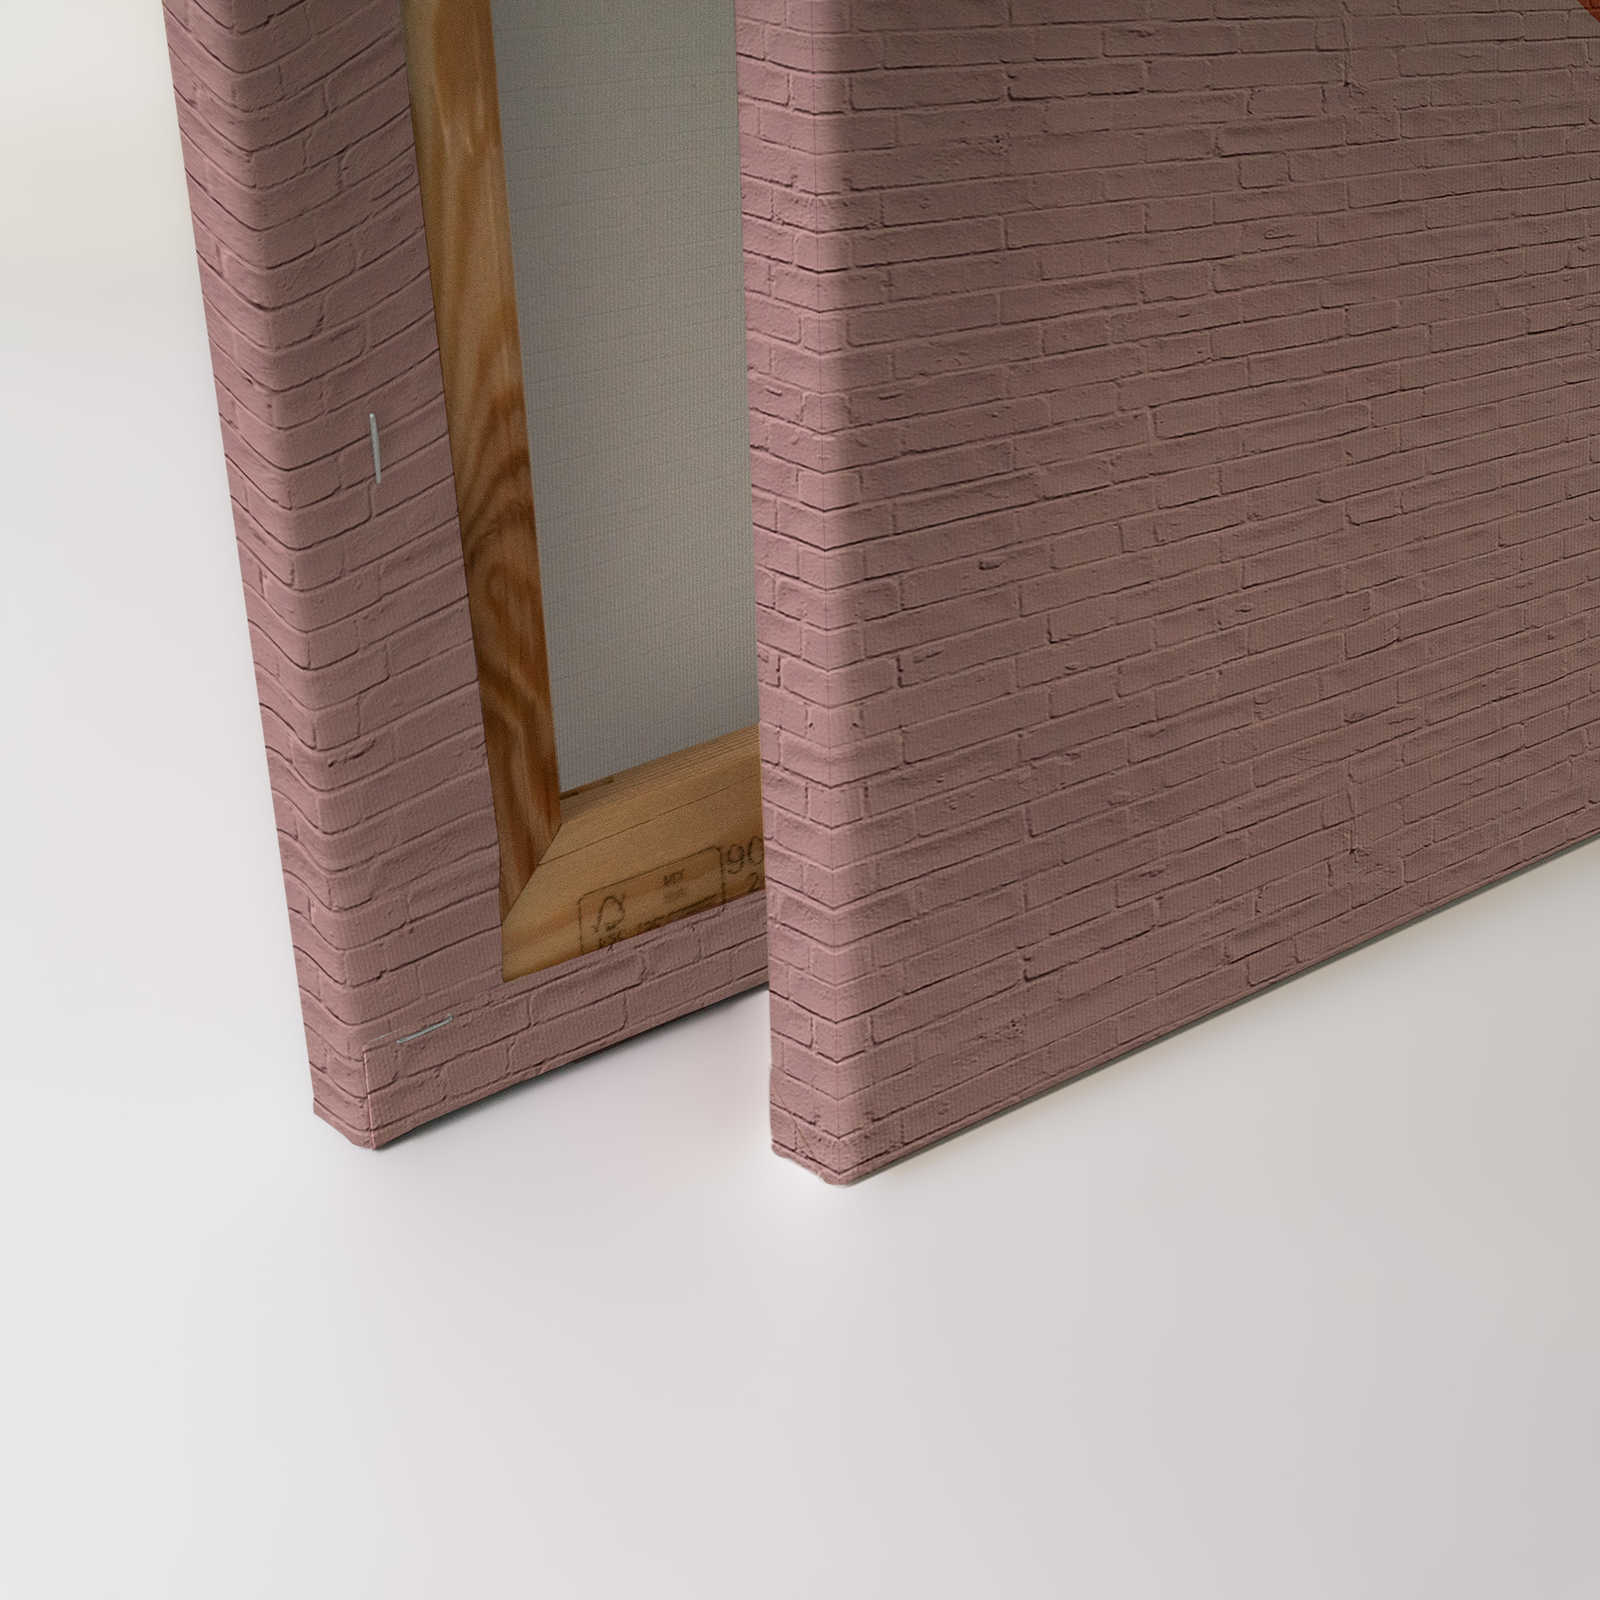             Brick by Brick 1 - Quadro su tela con grafica in mattoni - 0,90 m x 0,60 m
        